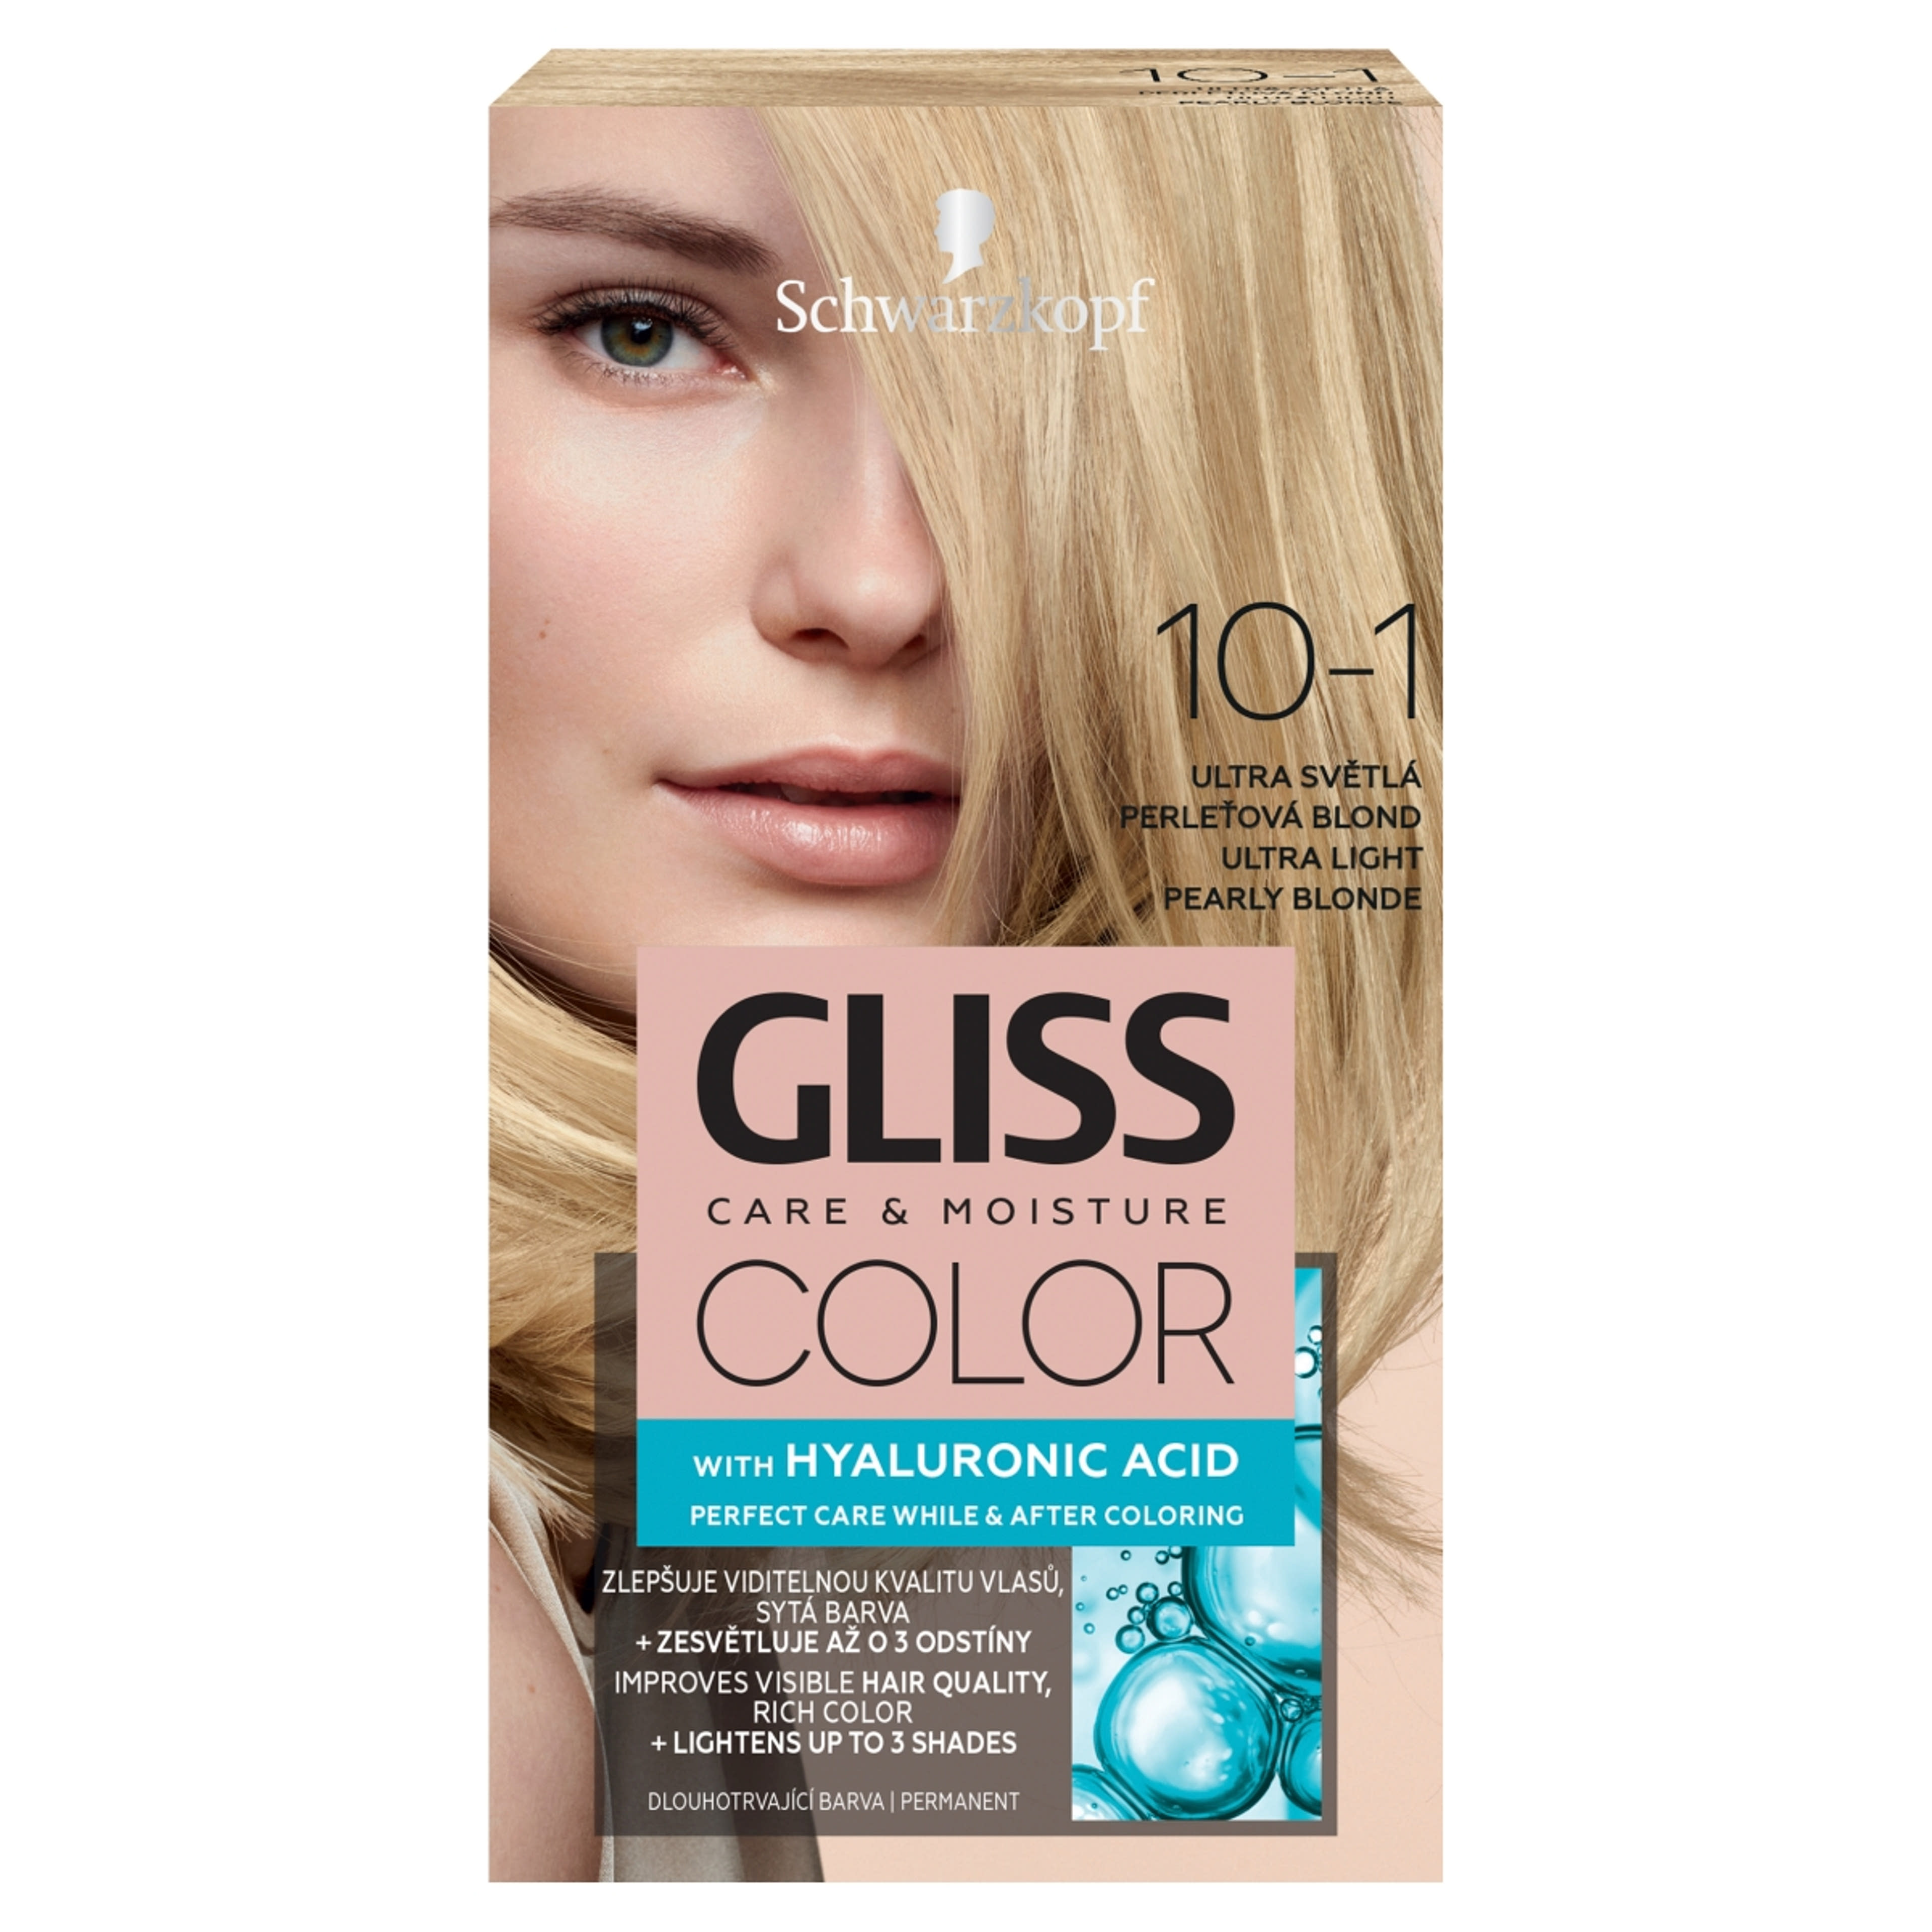 Gliss Color tartós hajfesték 10-1 Ultravilágos gyöngyszőke - 1 db